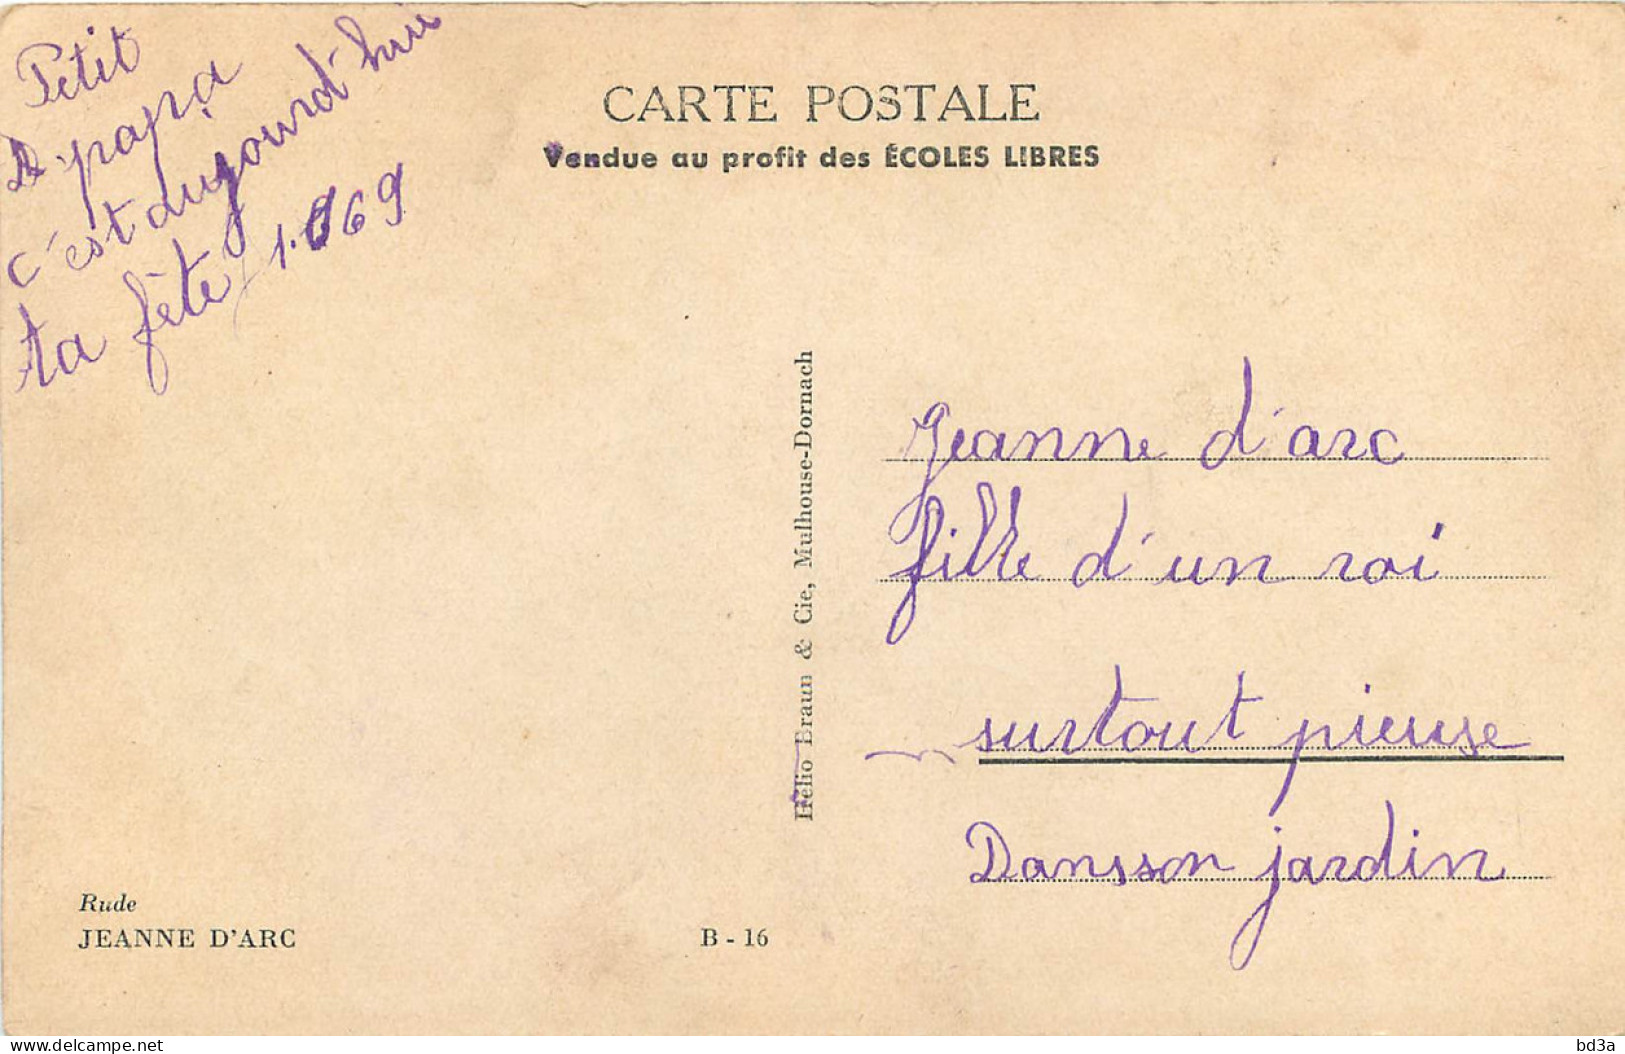 JEANNE D'ARC - RUDE - Historische Persönlichkeiten